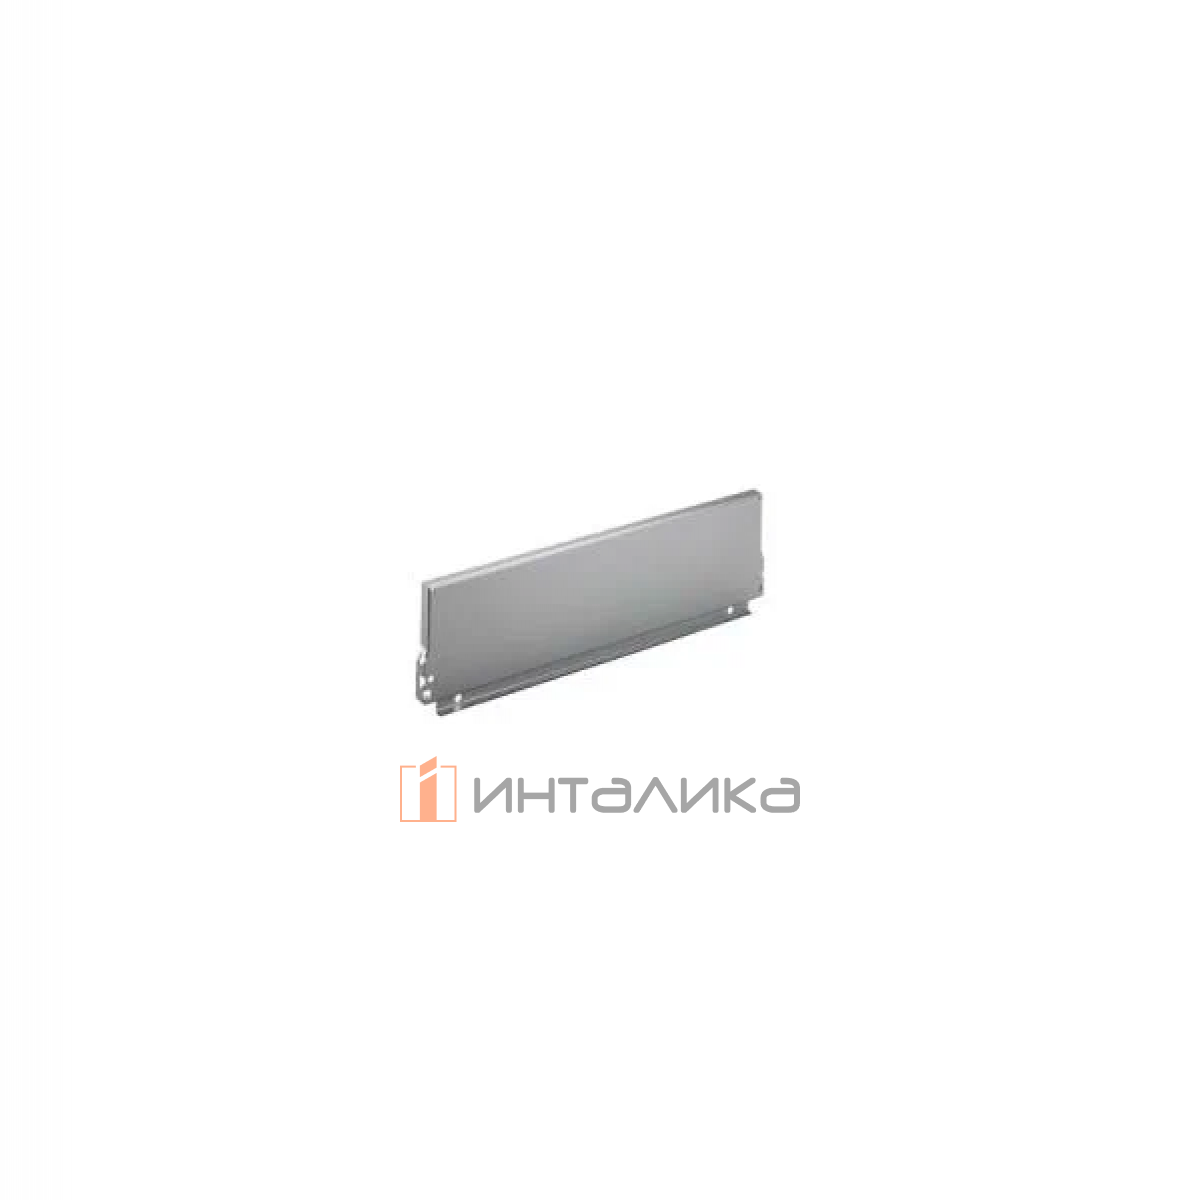 Задняя стенка HETTICH InnoTech/InnoTech Atira, высота 144мм, H900 мм, сталь, цвет серебристый, (V10)